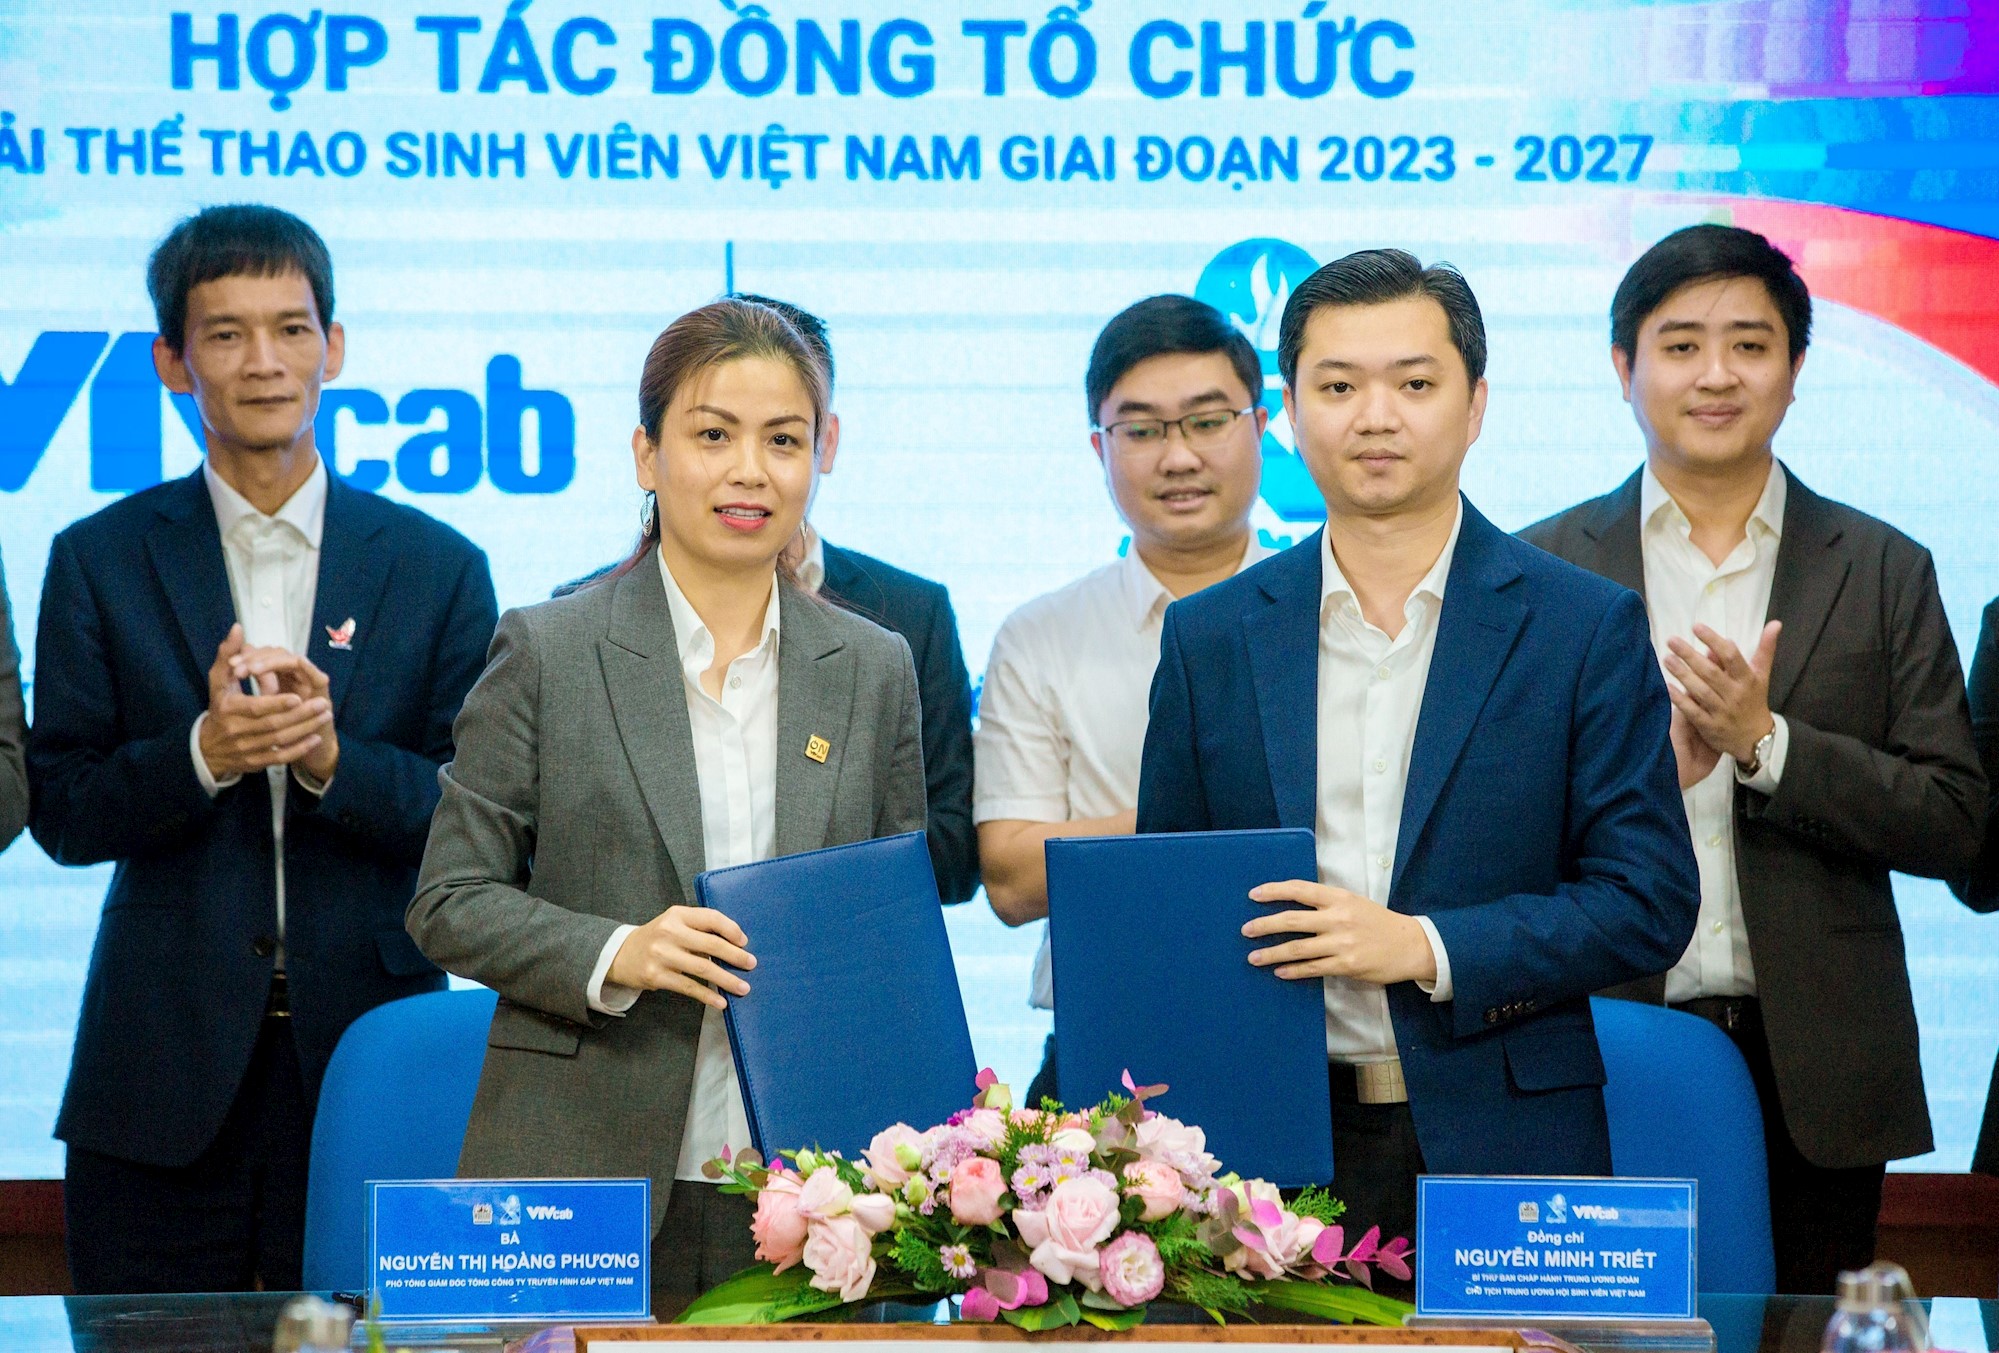 Trung ương Hội sinh viên Việt Nam và VTVcab phối hợp tổ chức Giải thể thao Sinh viên Việt Nam